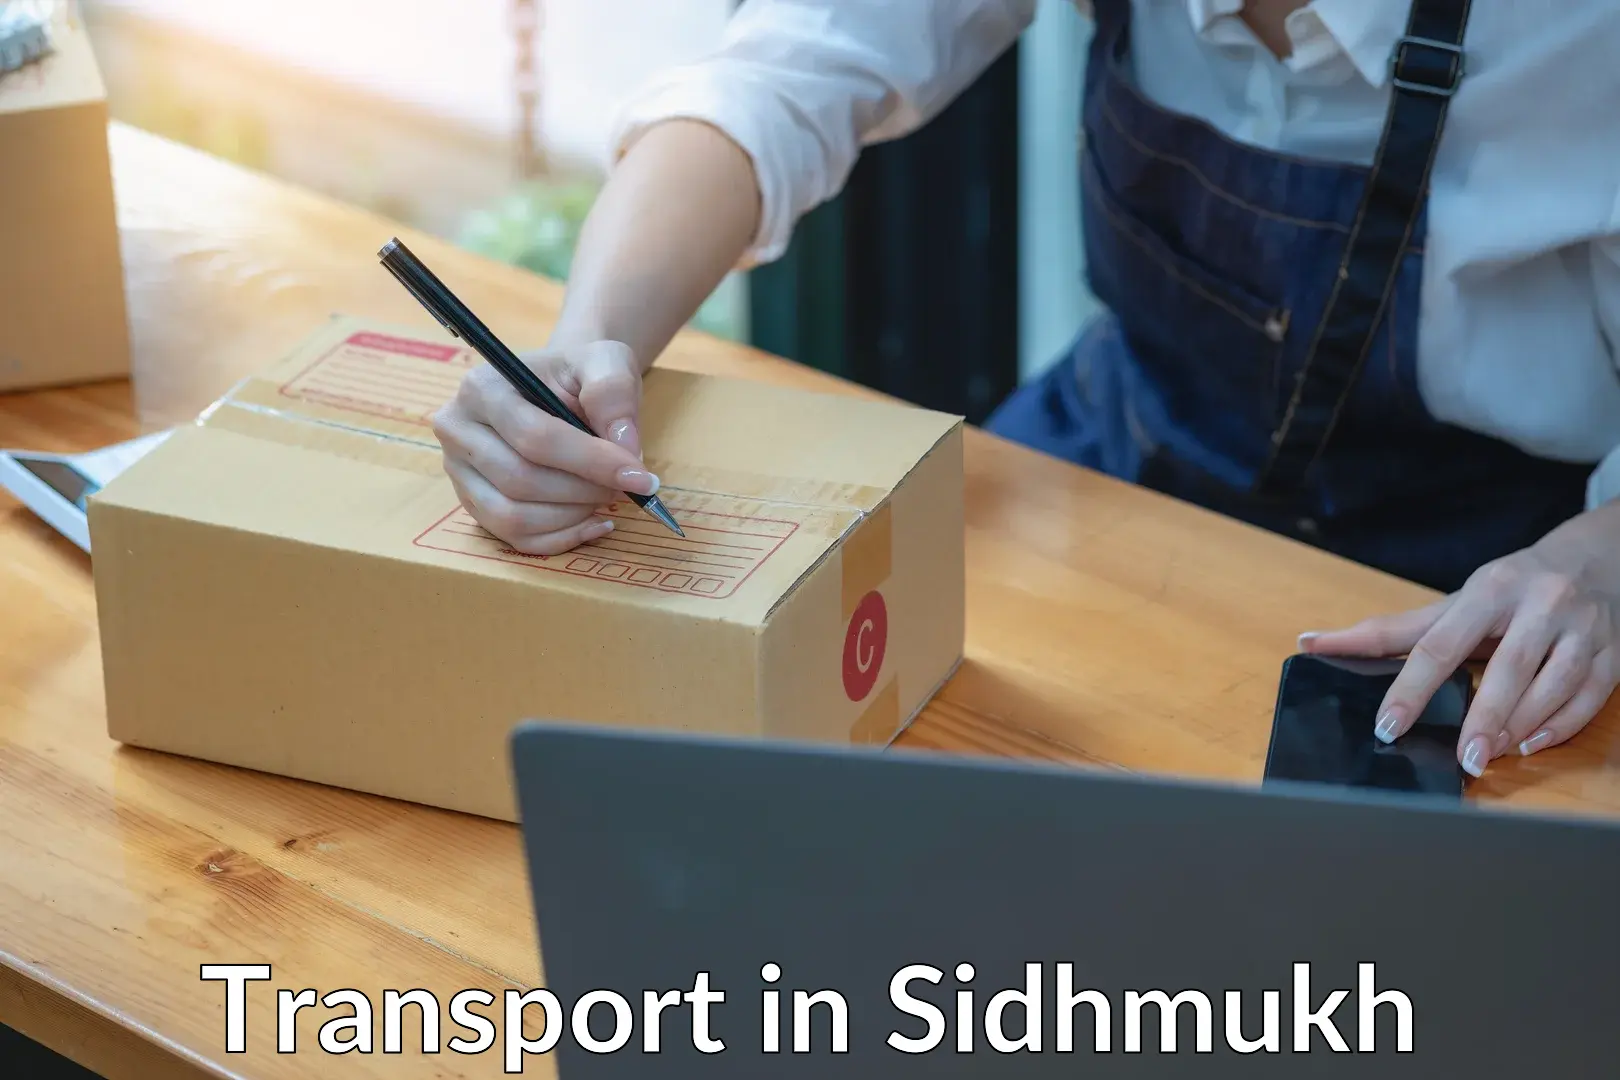 Online transport in Sidhmukh